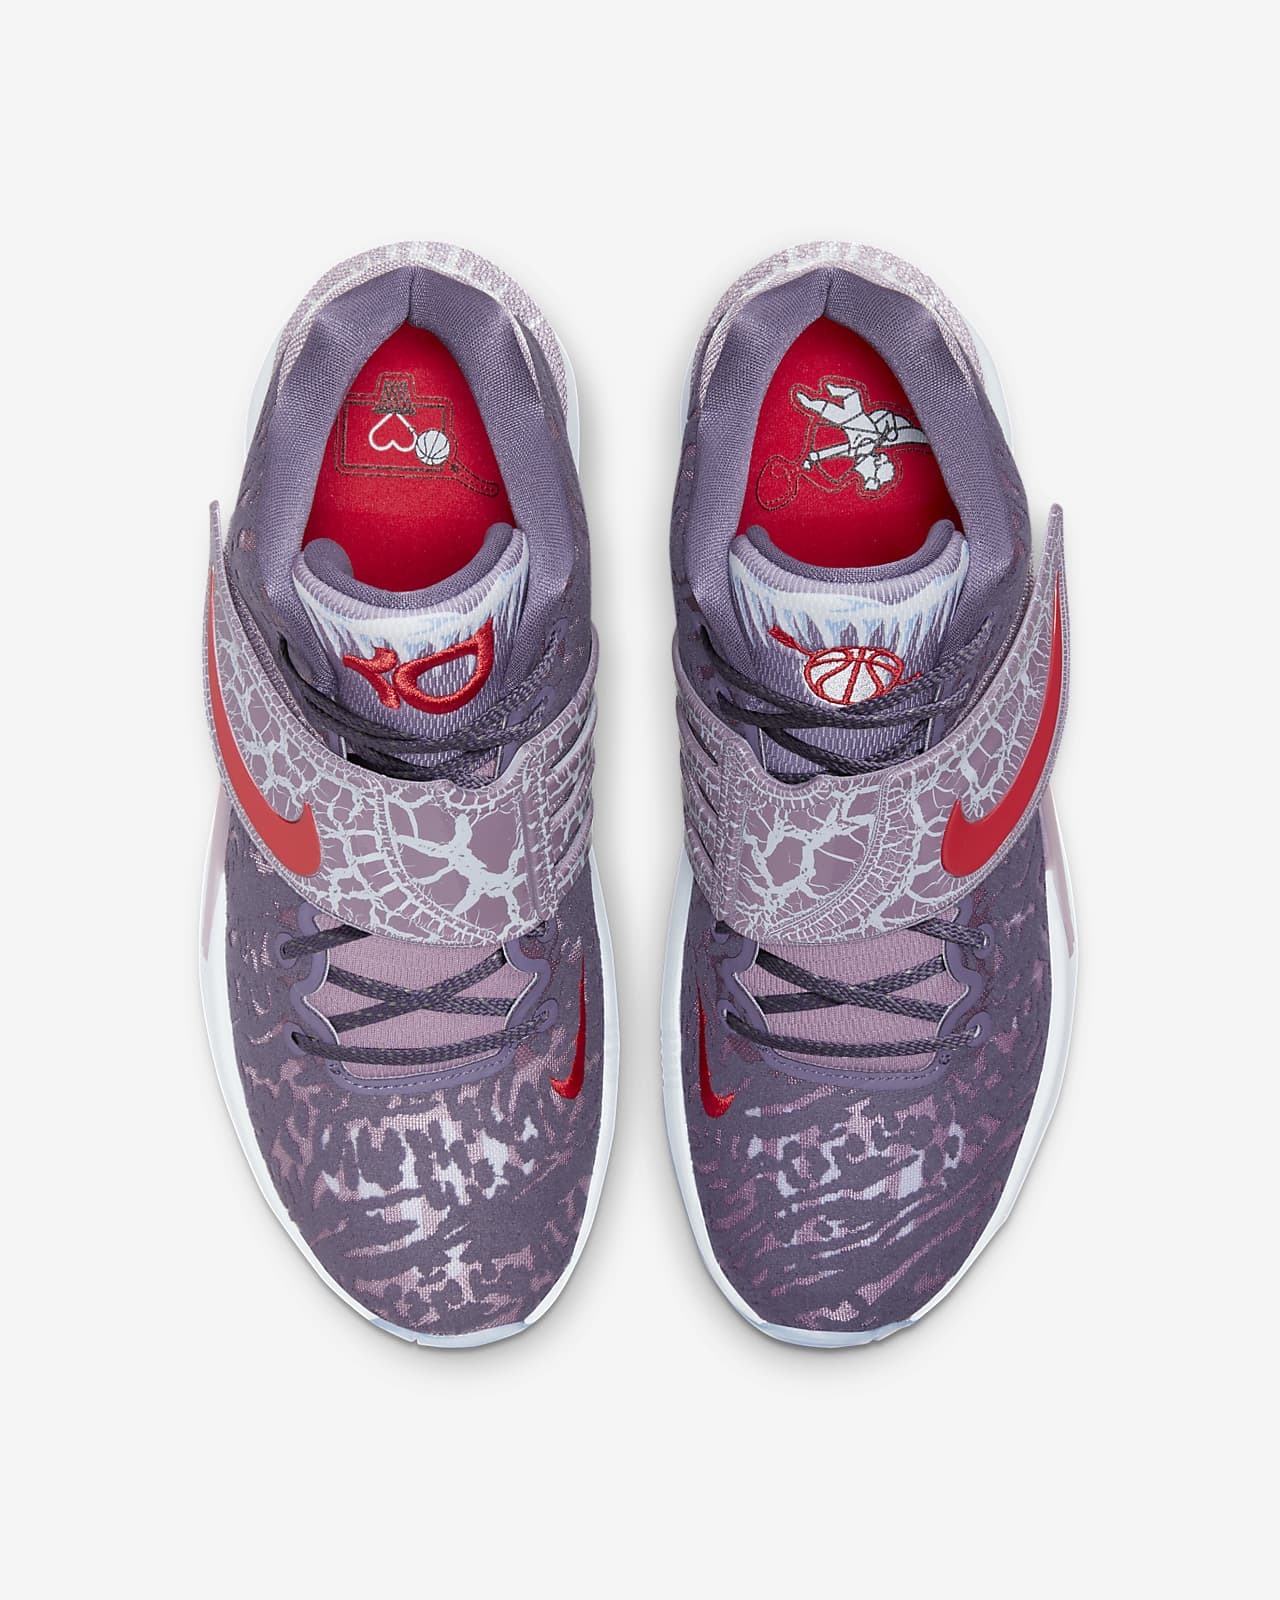 KD14 Basketball Shoes. Nike.com